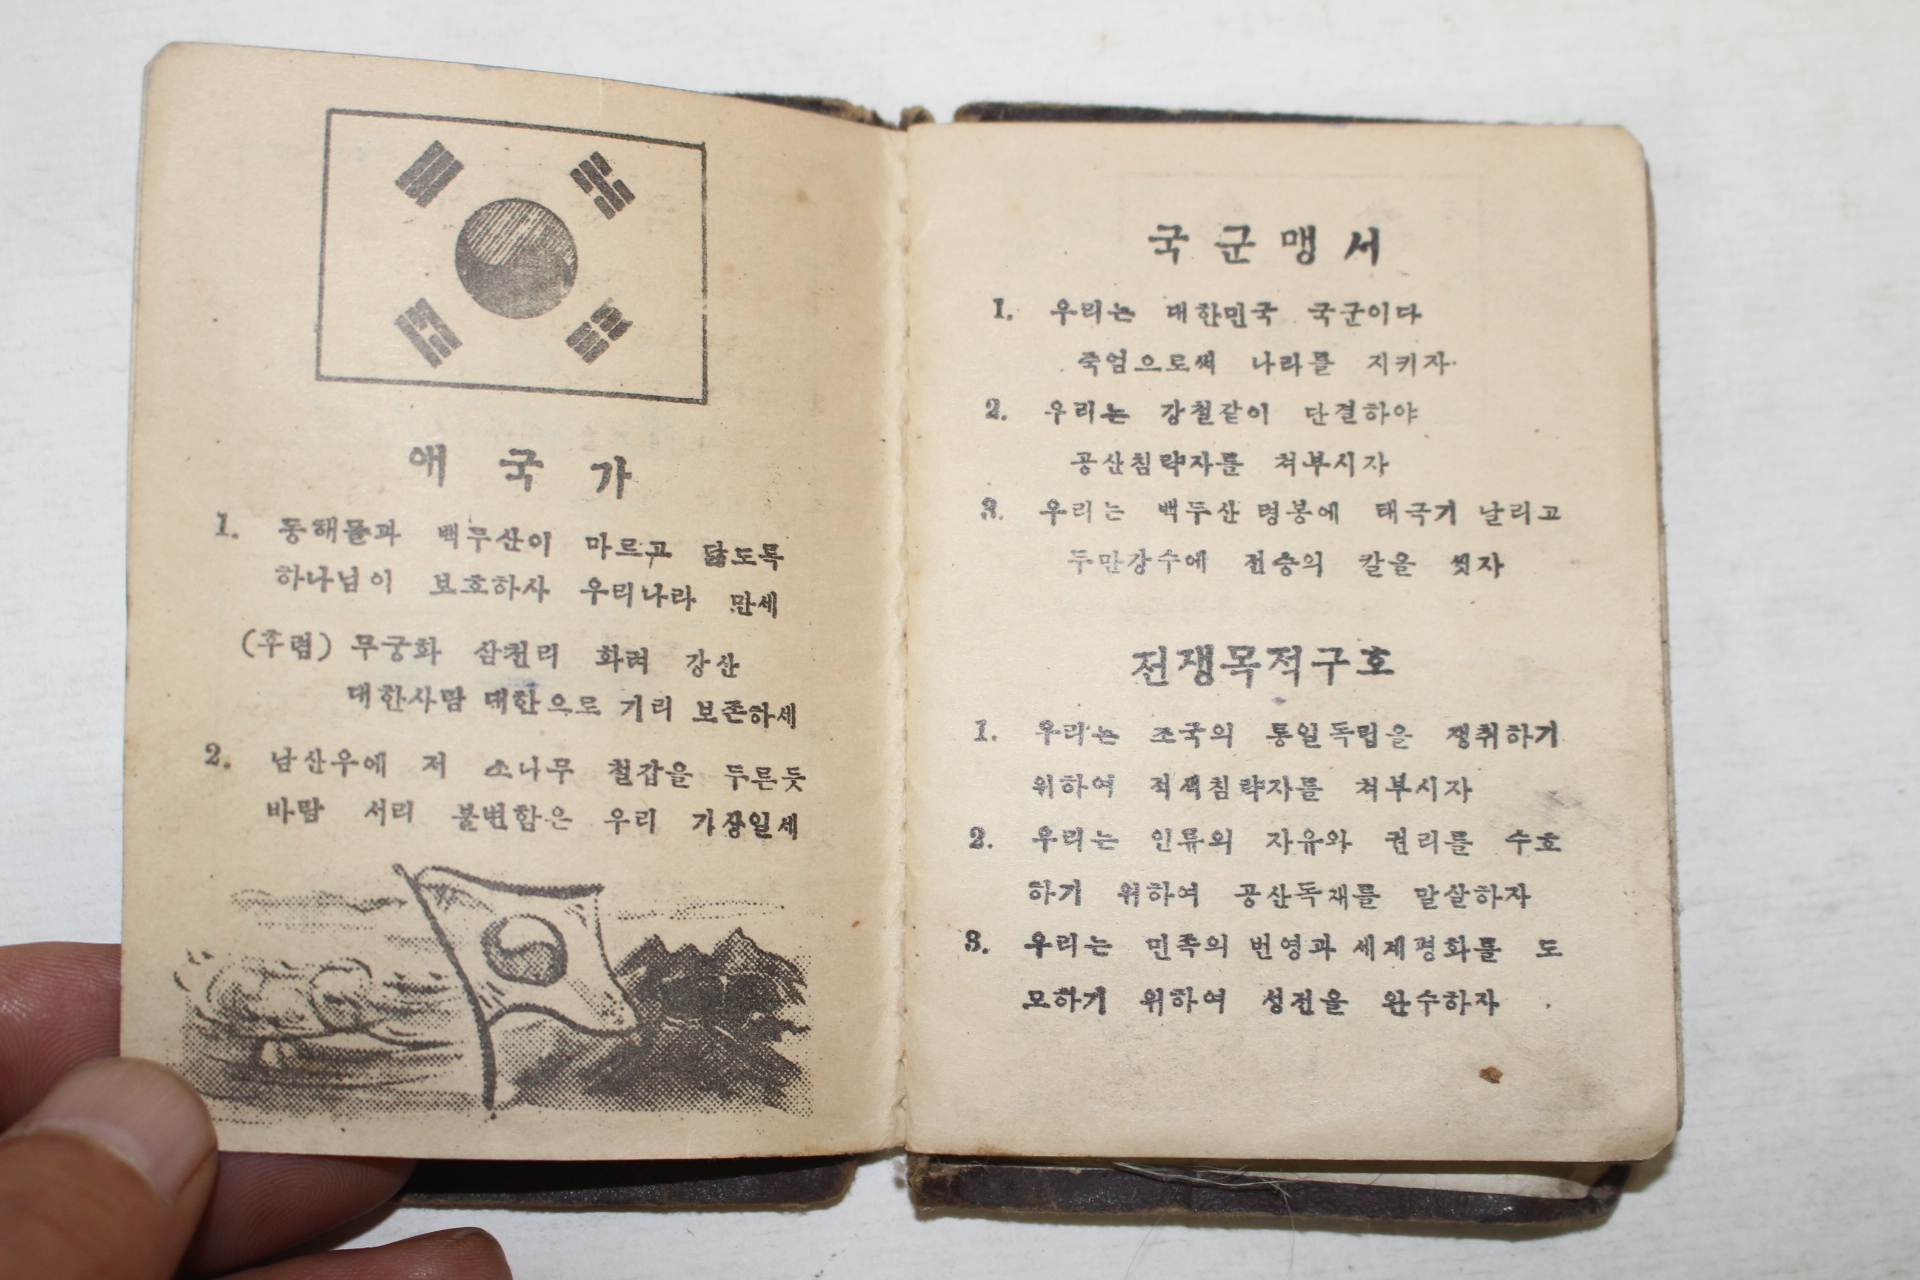 1954년 정훈요원수첩